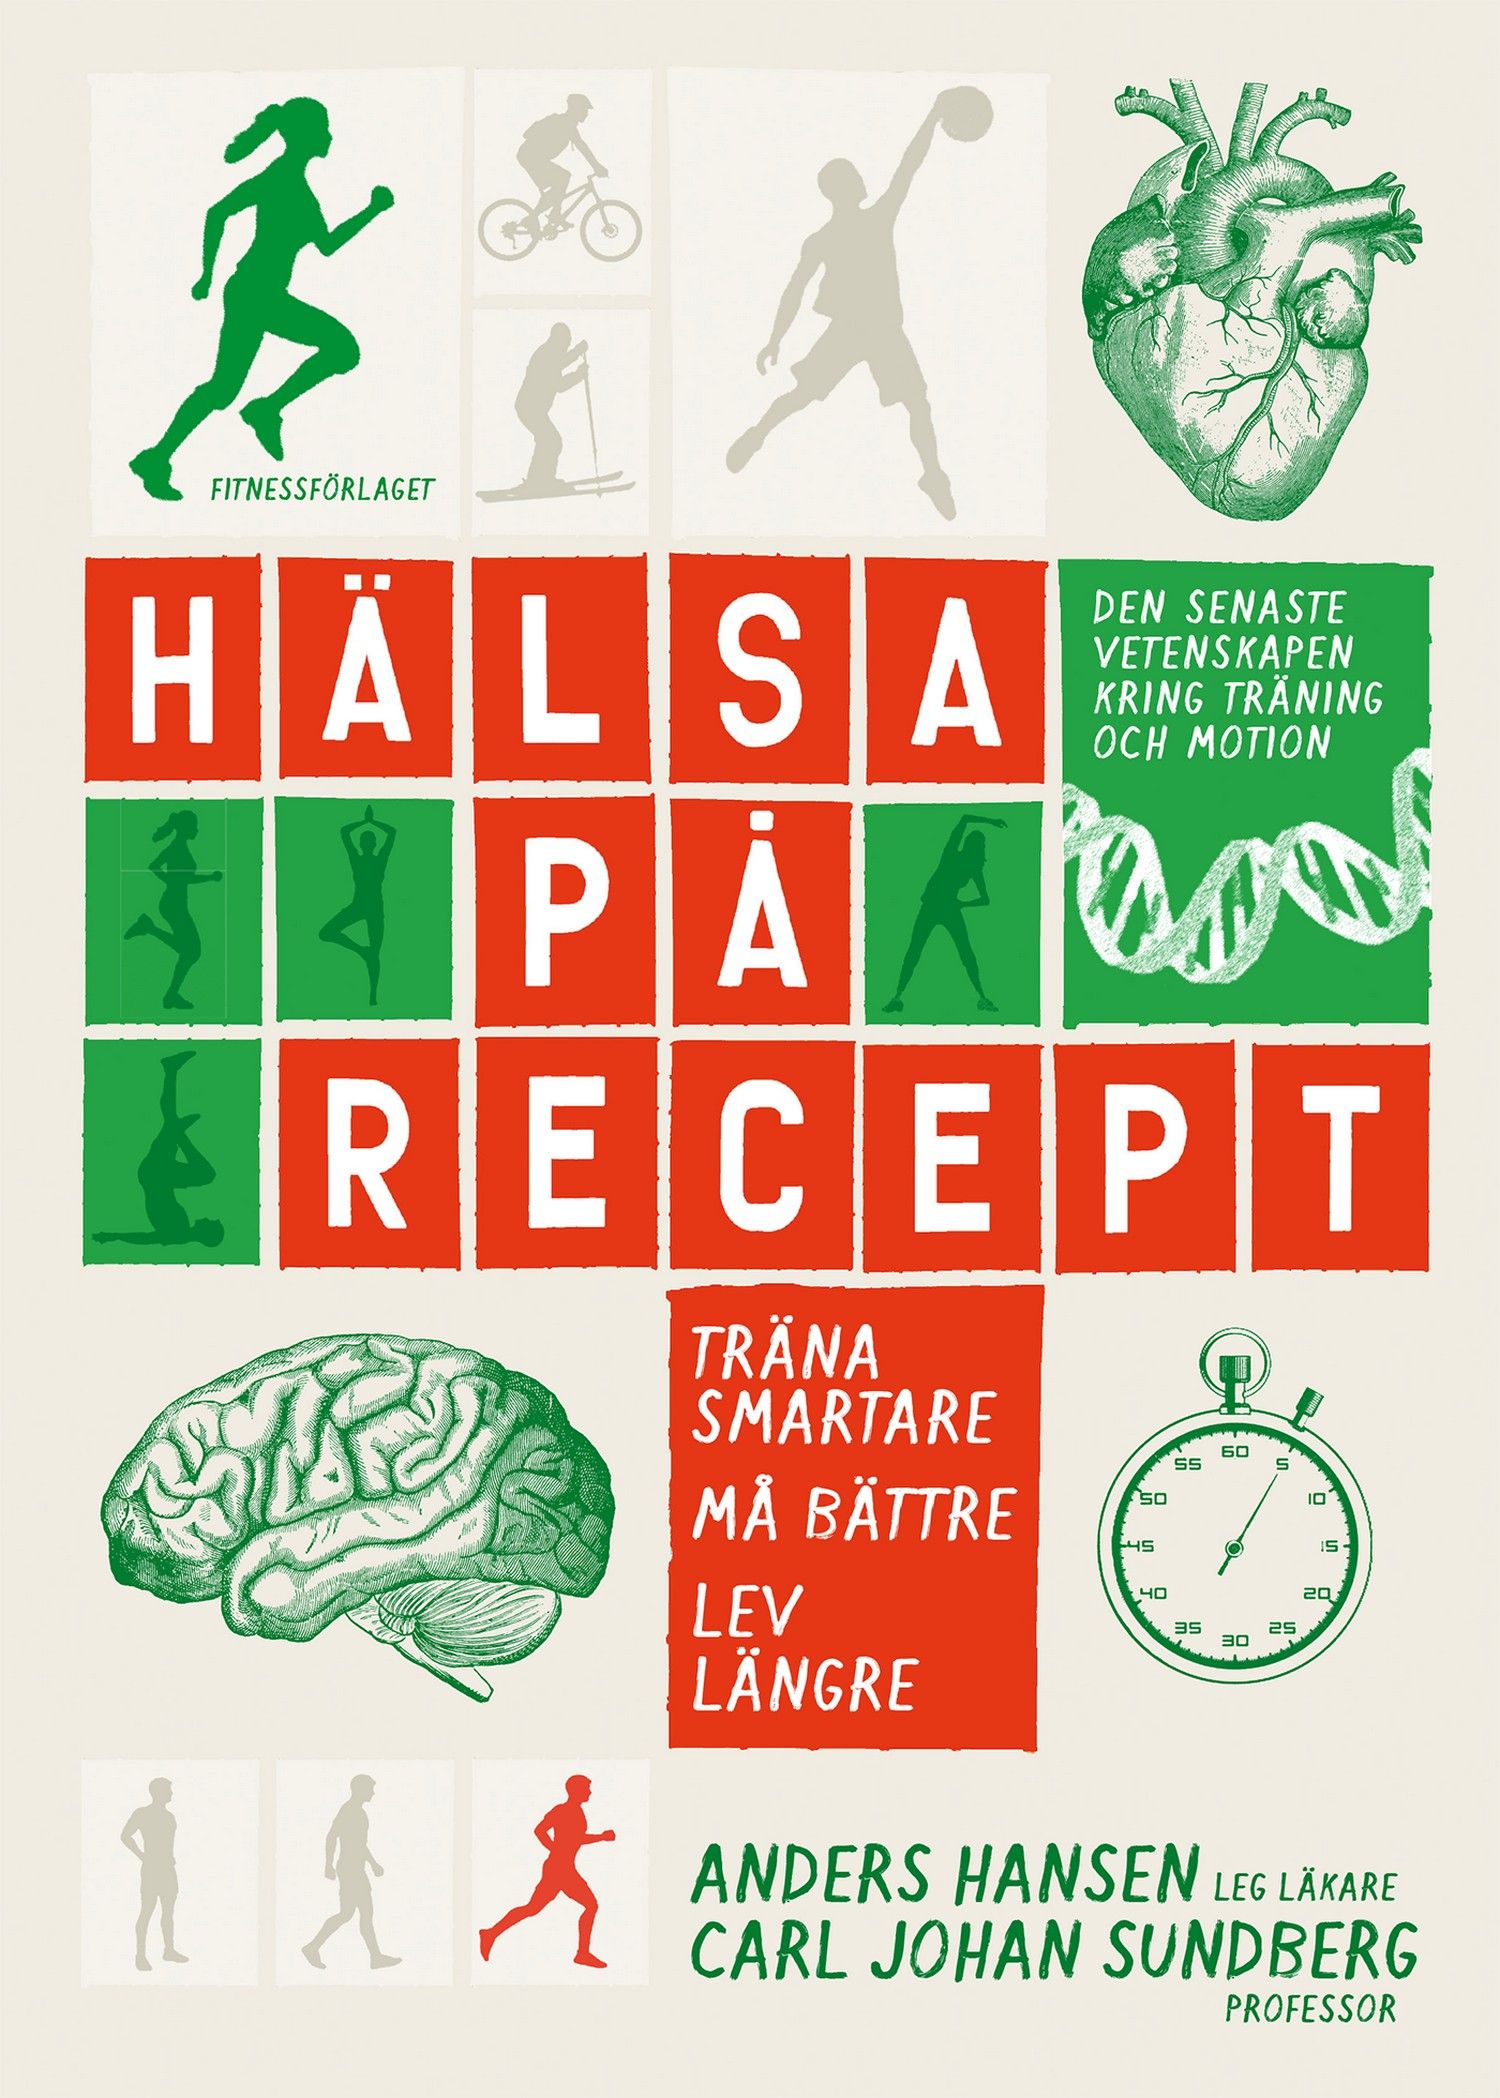 Hälsa på recept : träna smartare, må bättre, lev längre, e-bok av Anders Hansen, Carl Johan Sundberg